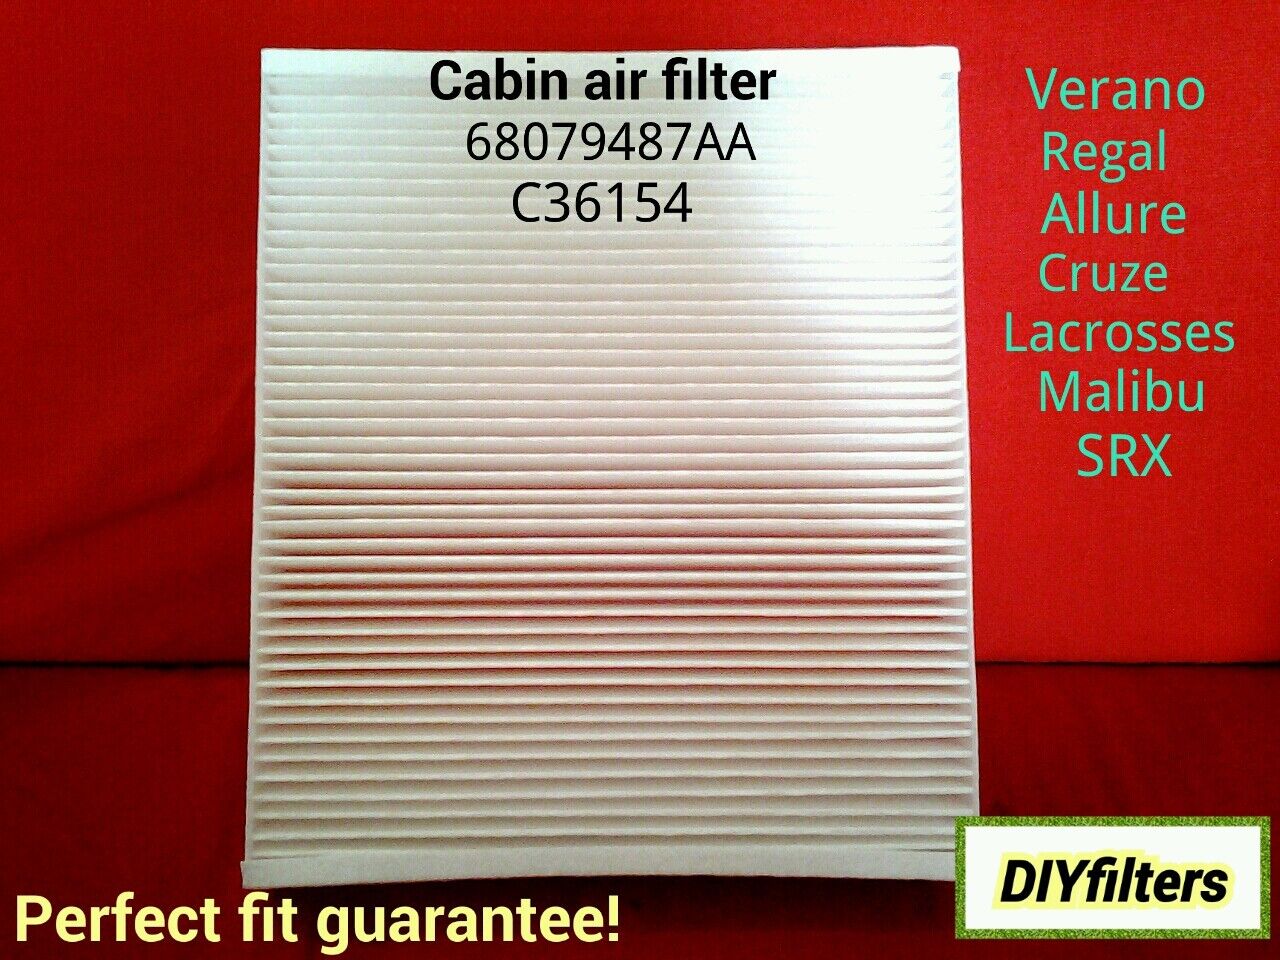 C36154 LaCrosse Regal Verano SRX Cruze Malibu Cabin Air Filter CAF1872C 24191